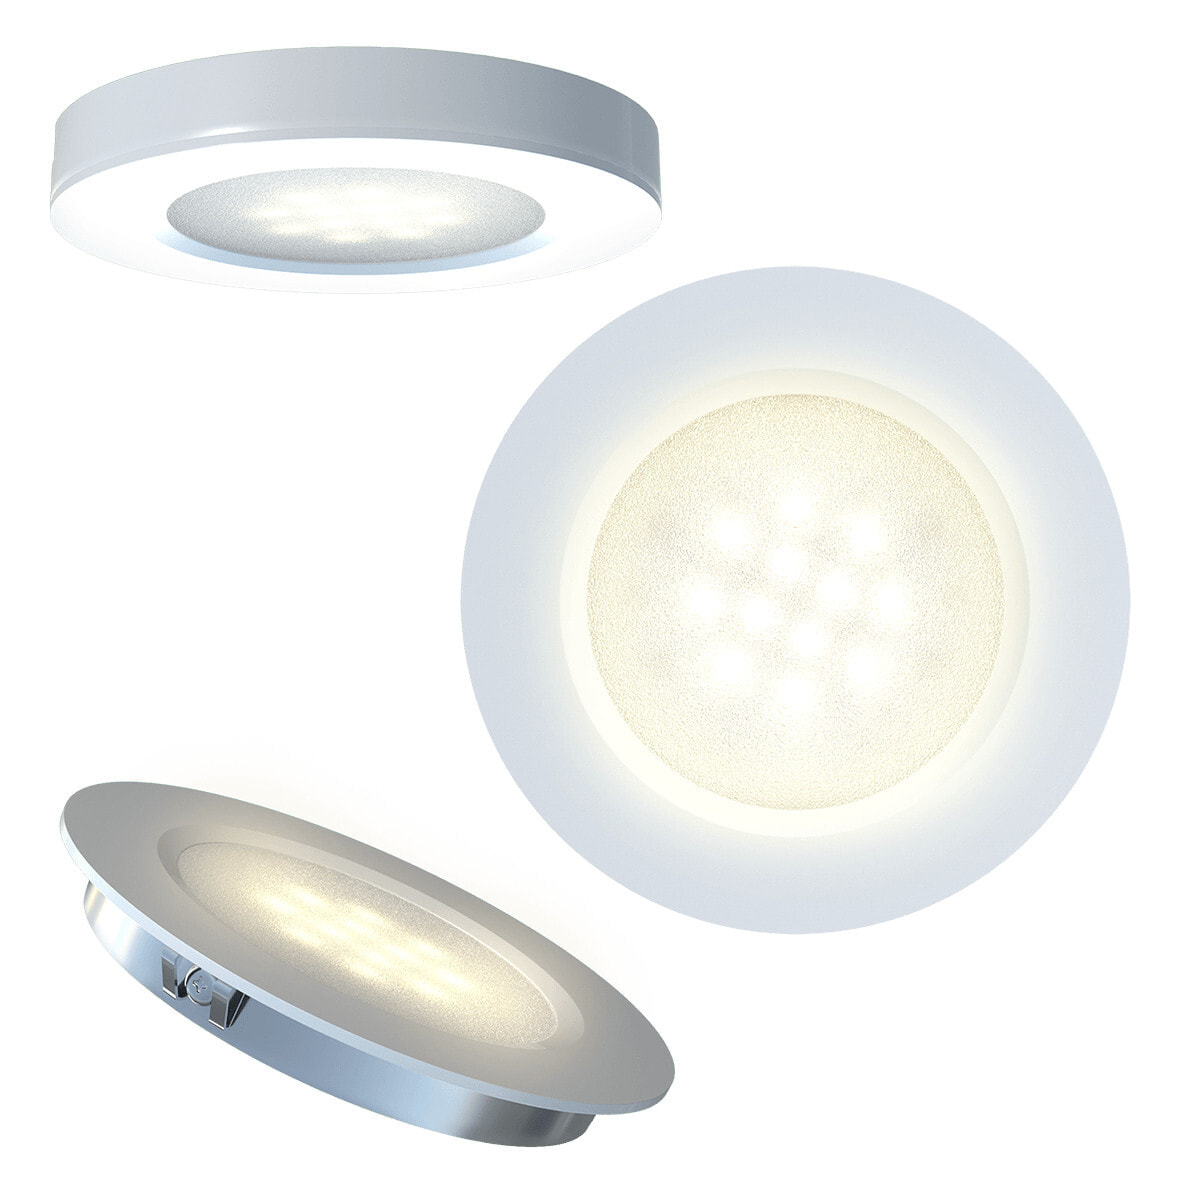 Innr Lighting PL 115 точечное освещение Облицованный точечный светильник Серебристый, Белый LED 3 W